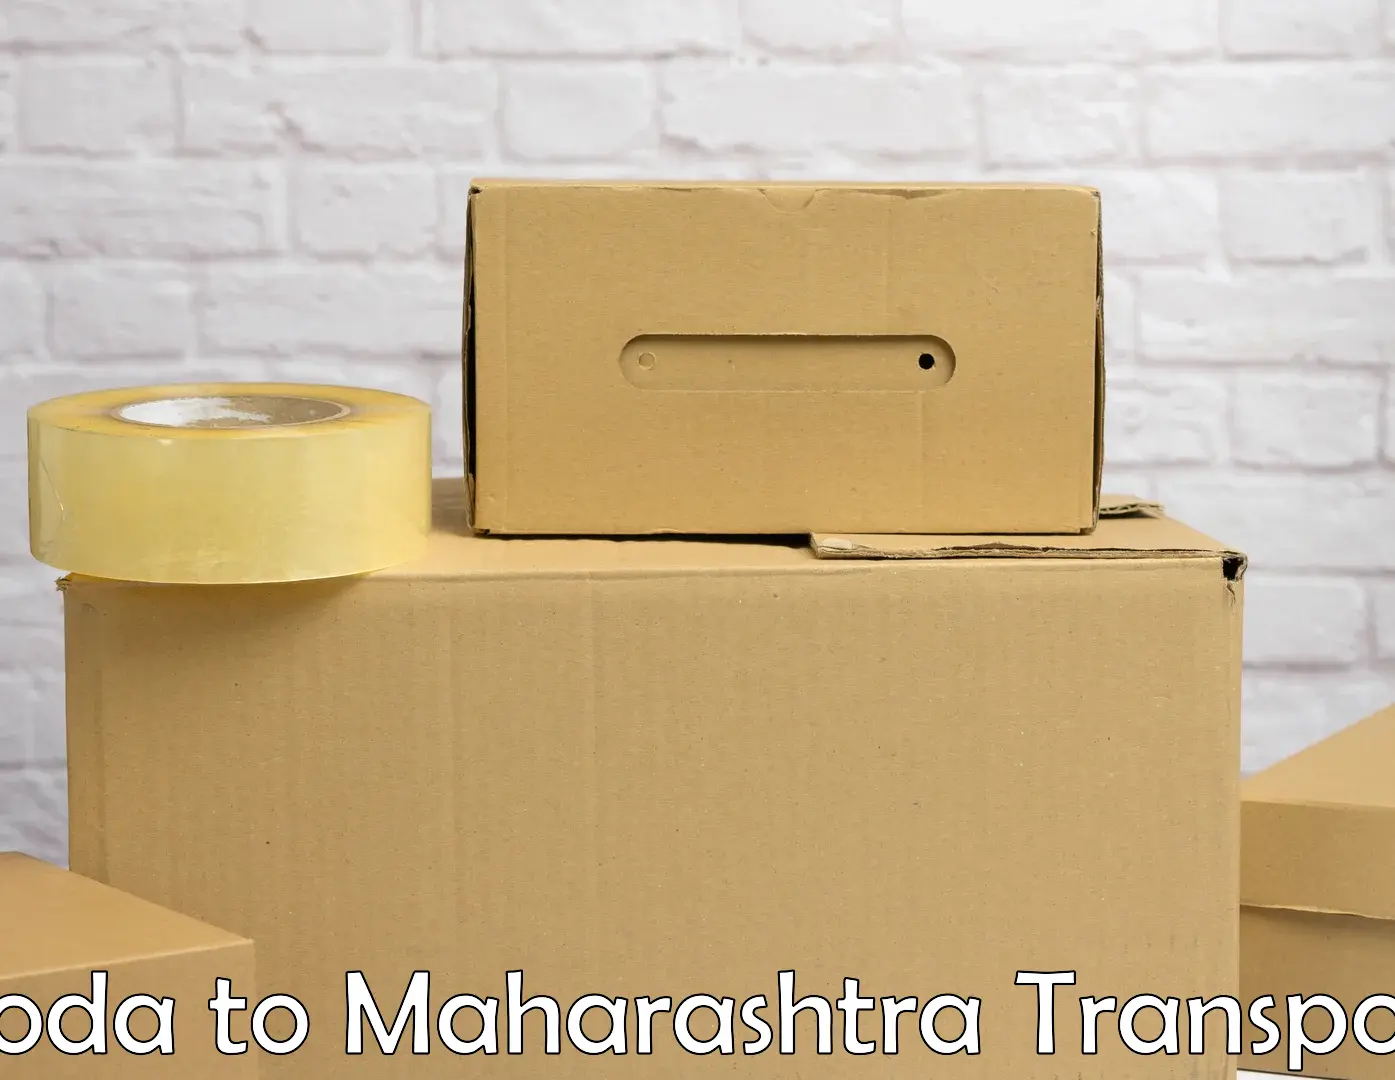 Furniture transport service Doda to Ballarpur